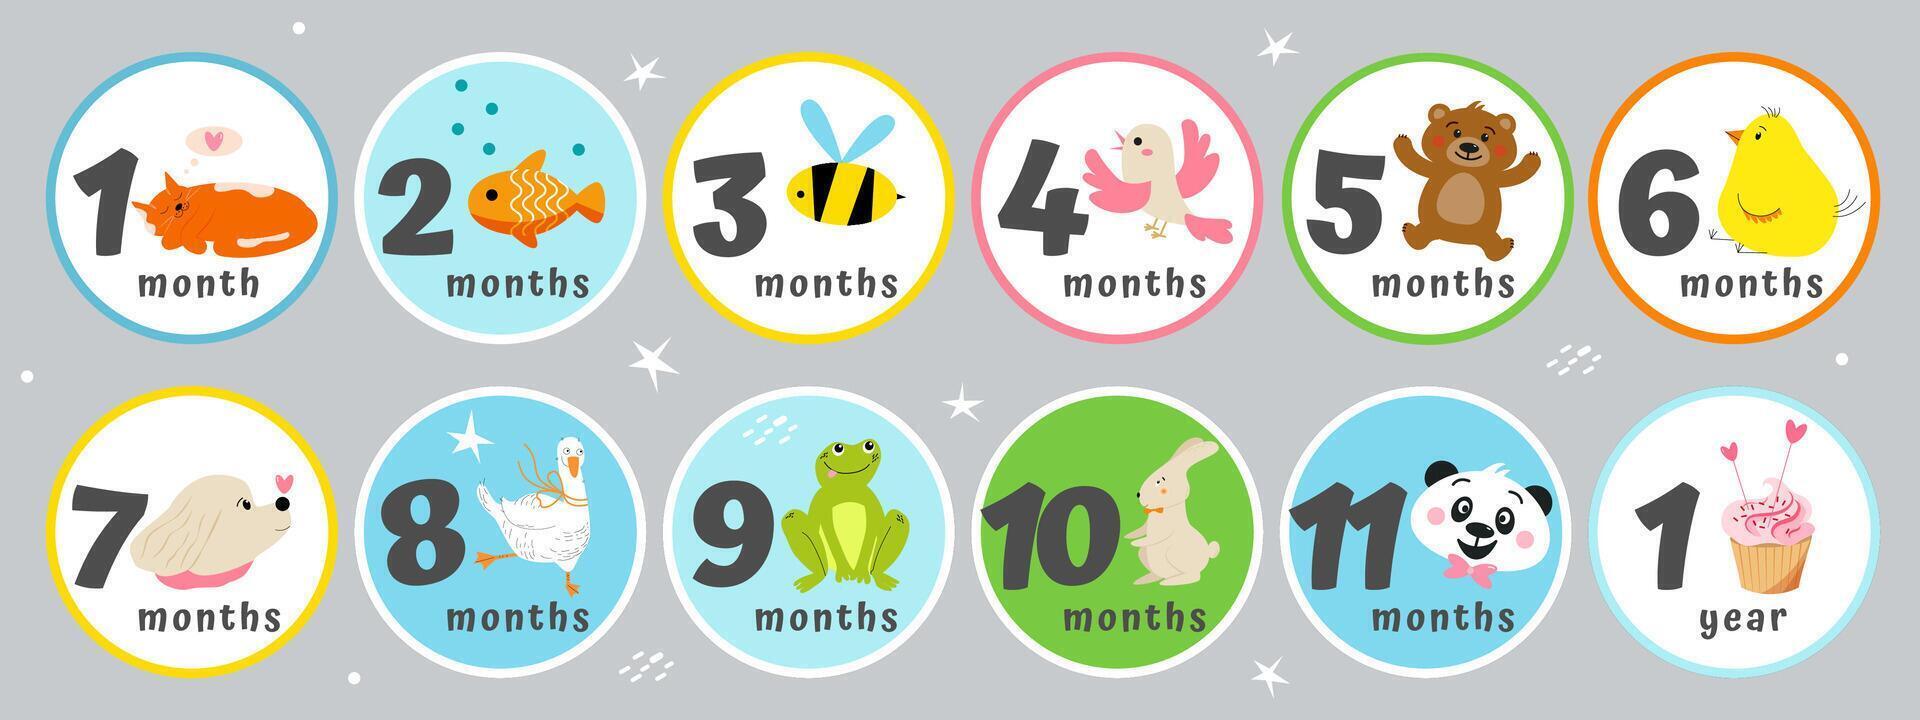 schattig baby stickers met maand van leeftijd, dieren, vogels, snoepgoed. vector